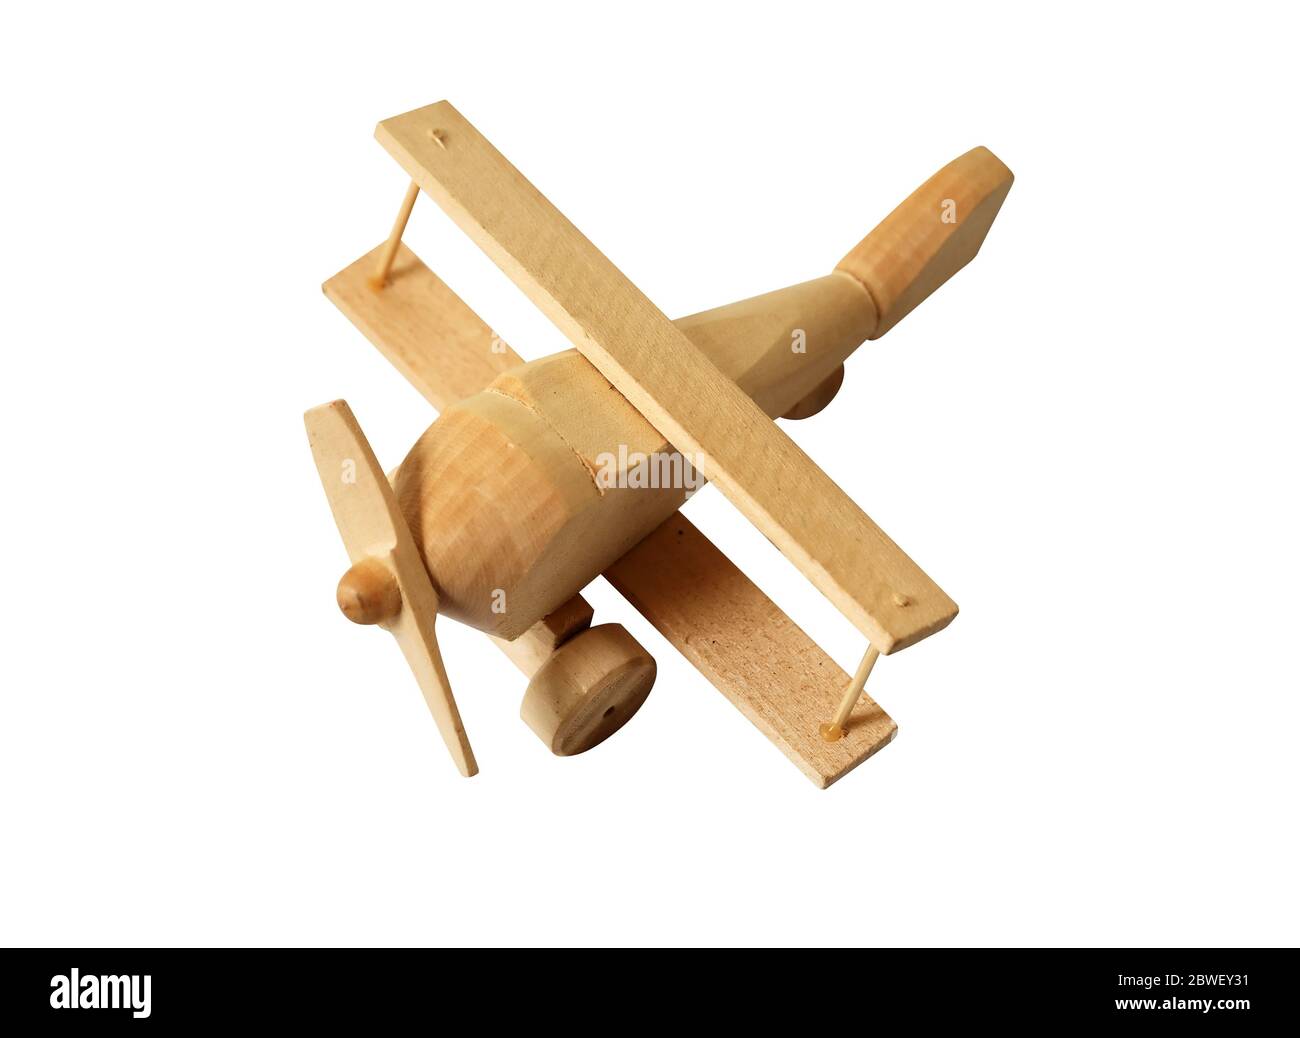 Piccolo aeroplano in legno isolato su sfondo bianco con percorso di ritaglio Foto Stock